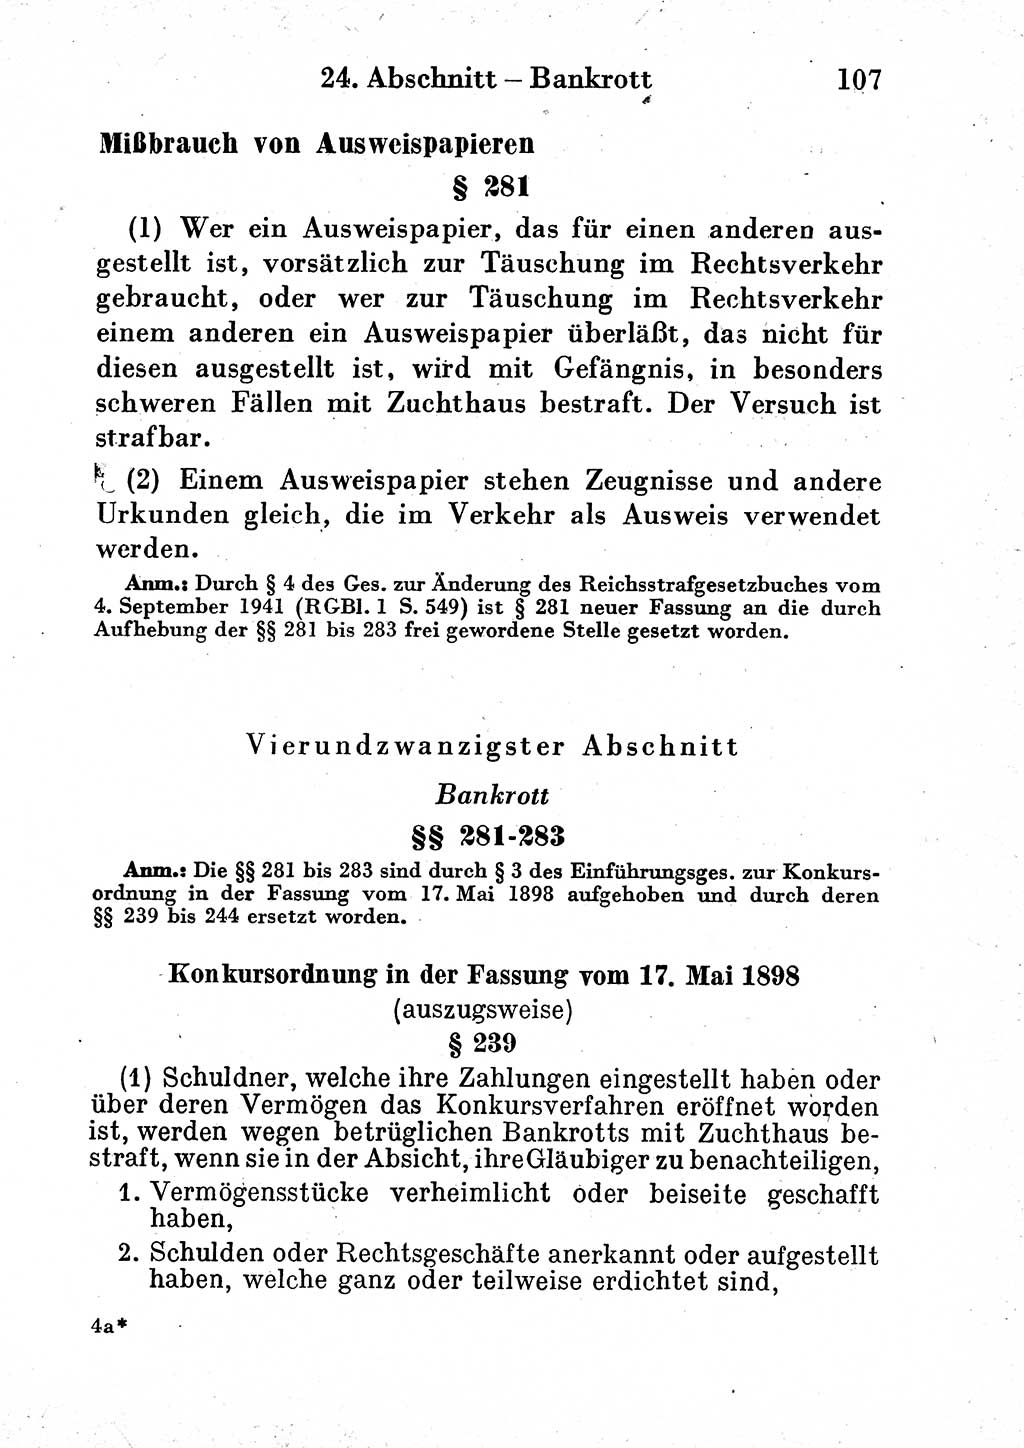 Strafgesetzbuch (StGB) und andere Strafgesetze [Deutsche Demokratische Republik (DDR)] 1954, Seite 107 (StGB Strafges. DDR 1954, S. 107)